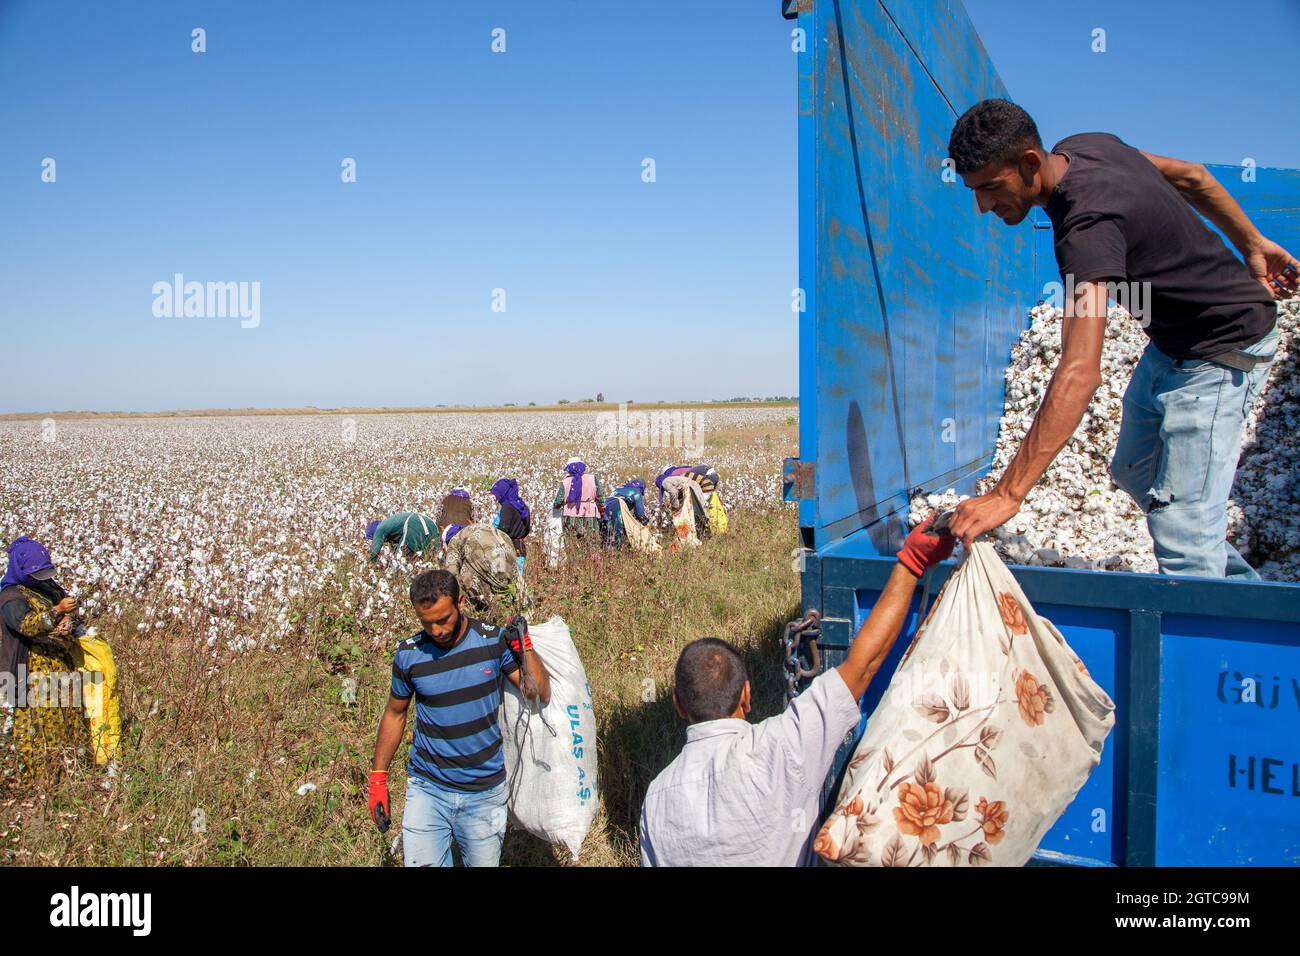 Adana / Turchia - 09/26/2014: Lavoratori che raccolgono cotone nel campo del cotone Foto Stock